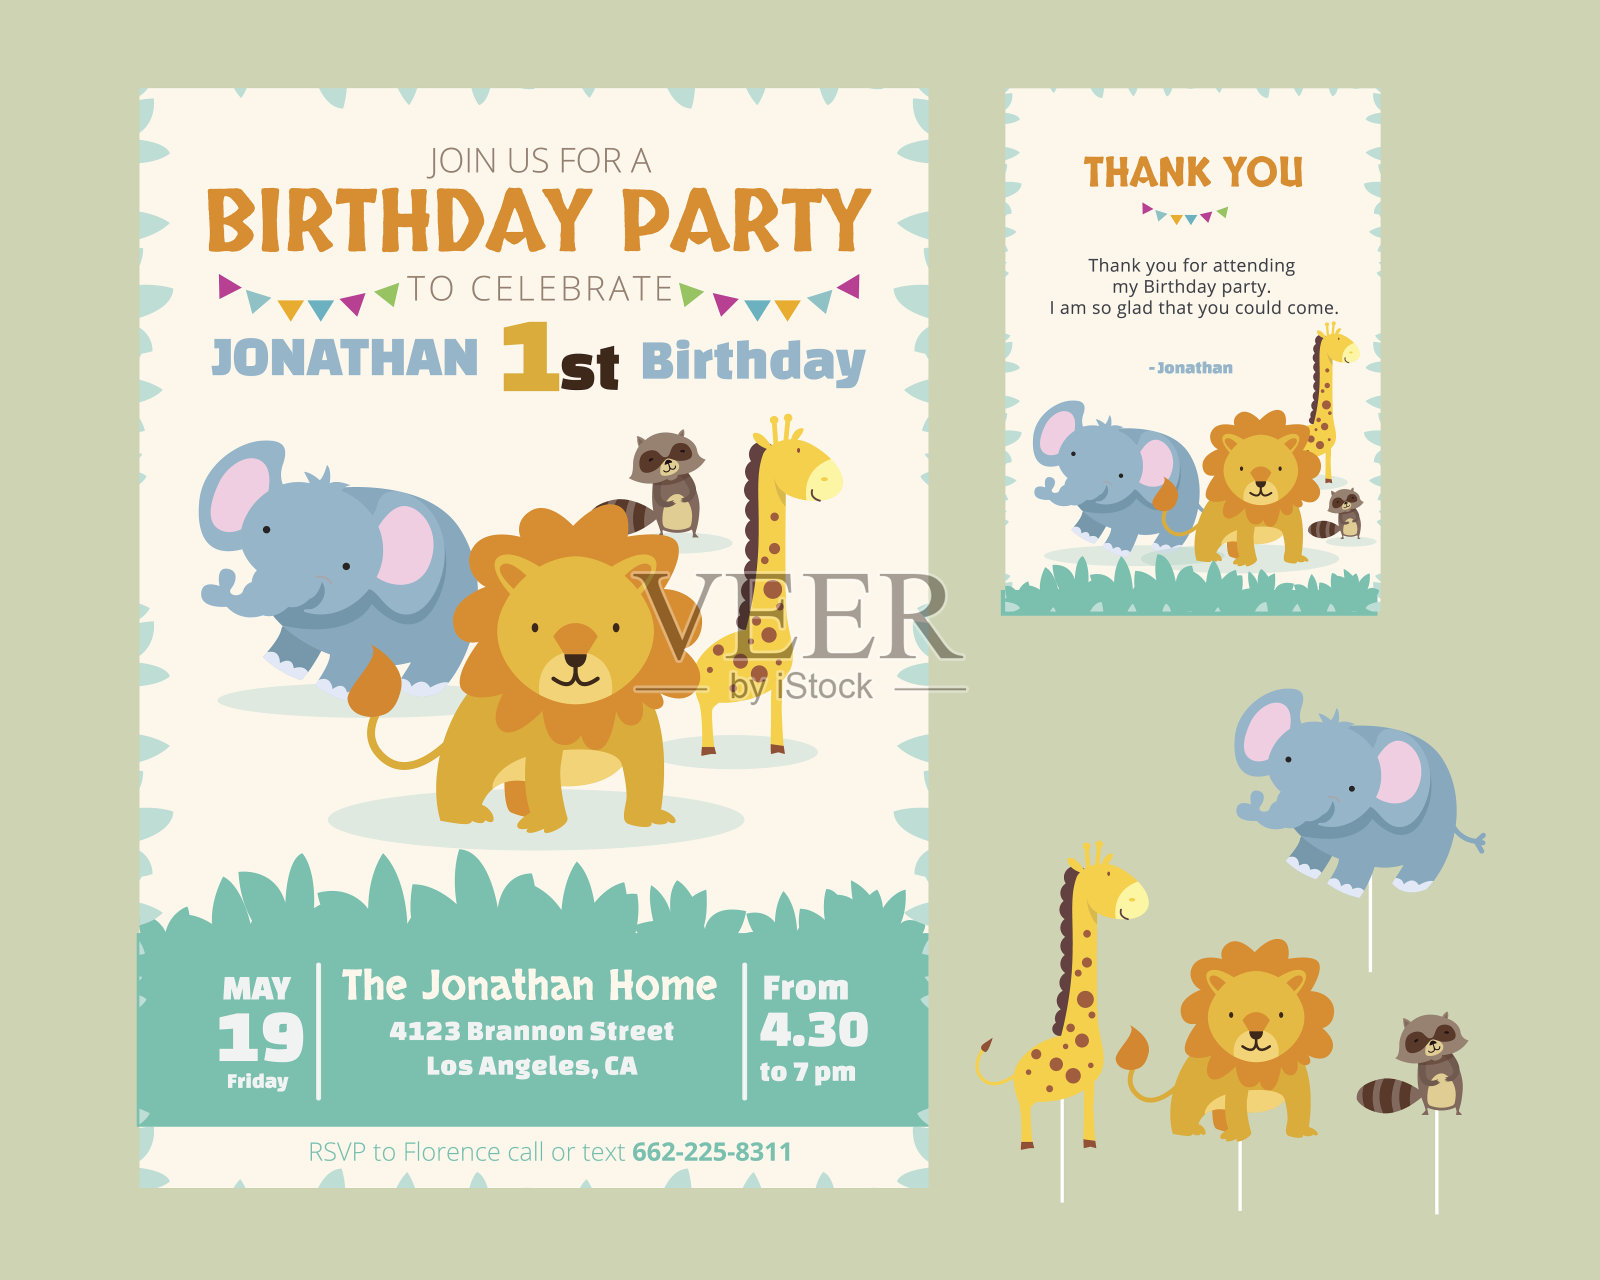 可爱的动物主题生日派对邀请和感谢卡插图模板设计模板素材